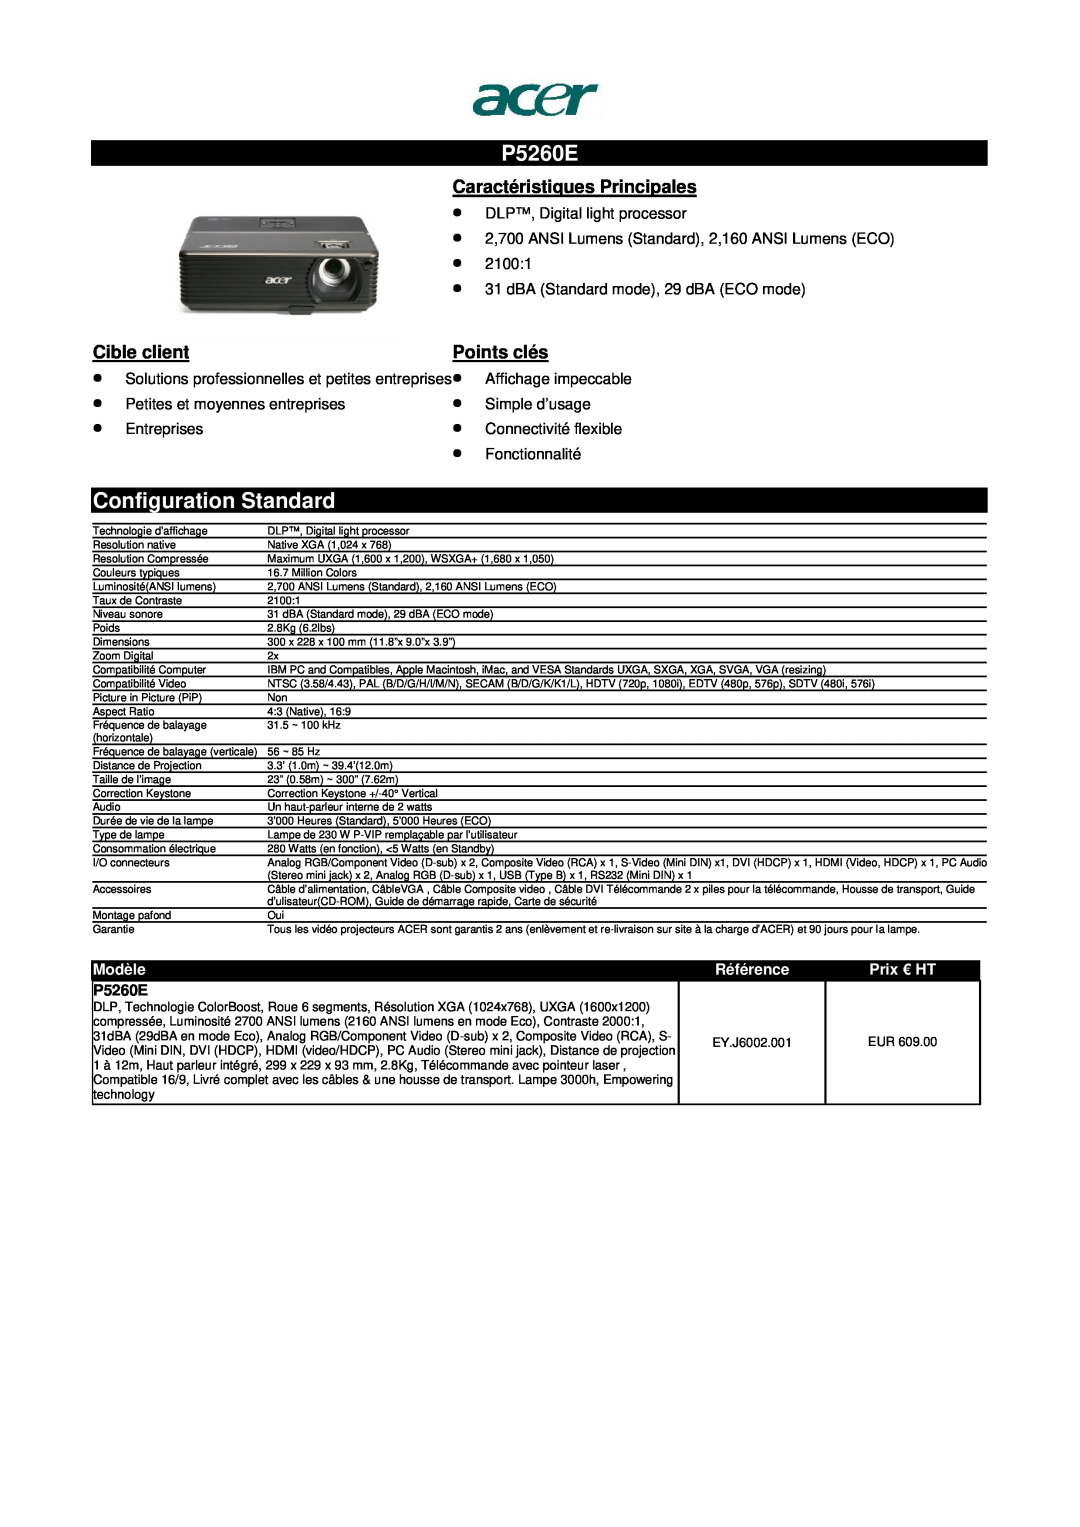 Acer S1200 P5260E, Caractéristiques Principales, Référence, Configuration Standard, Cible client, Points clés, Modèle 